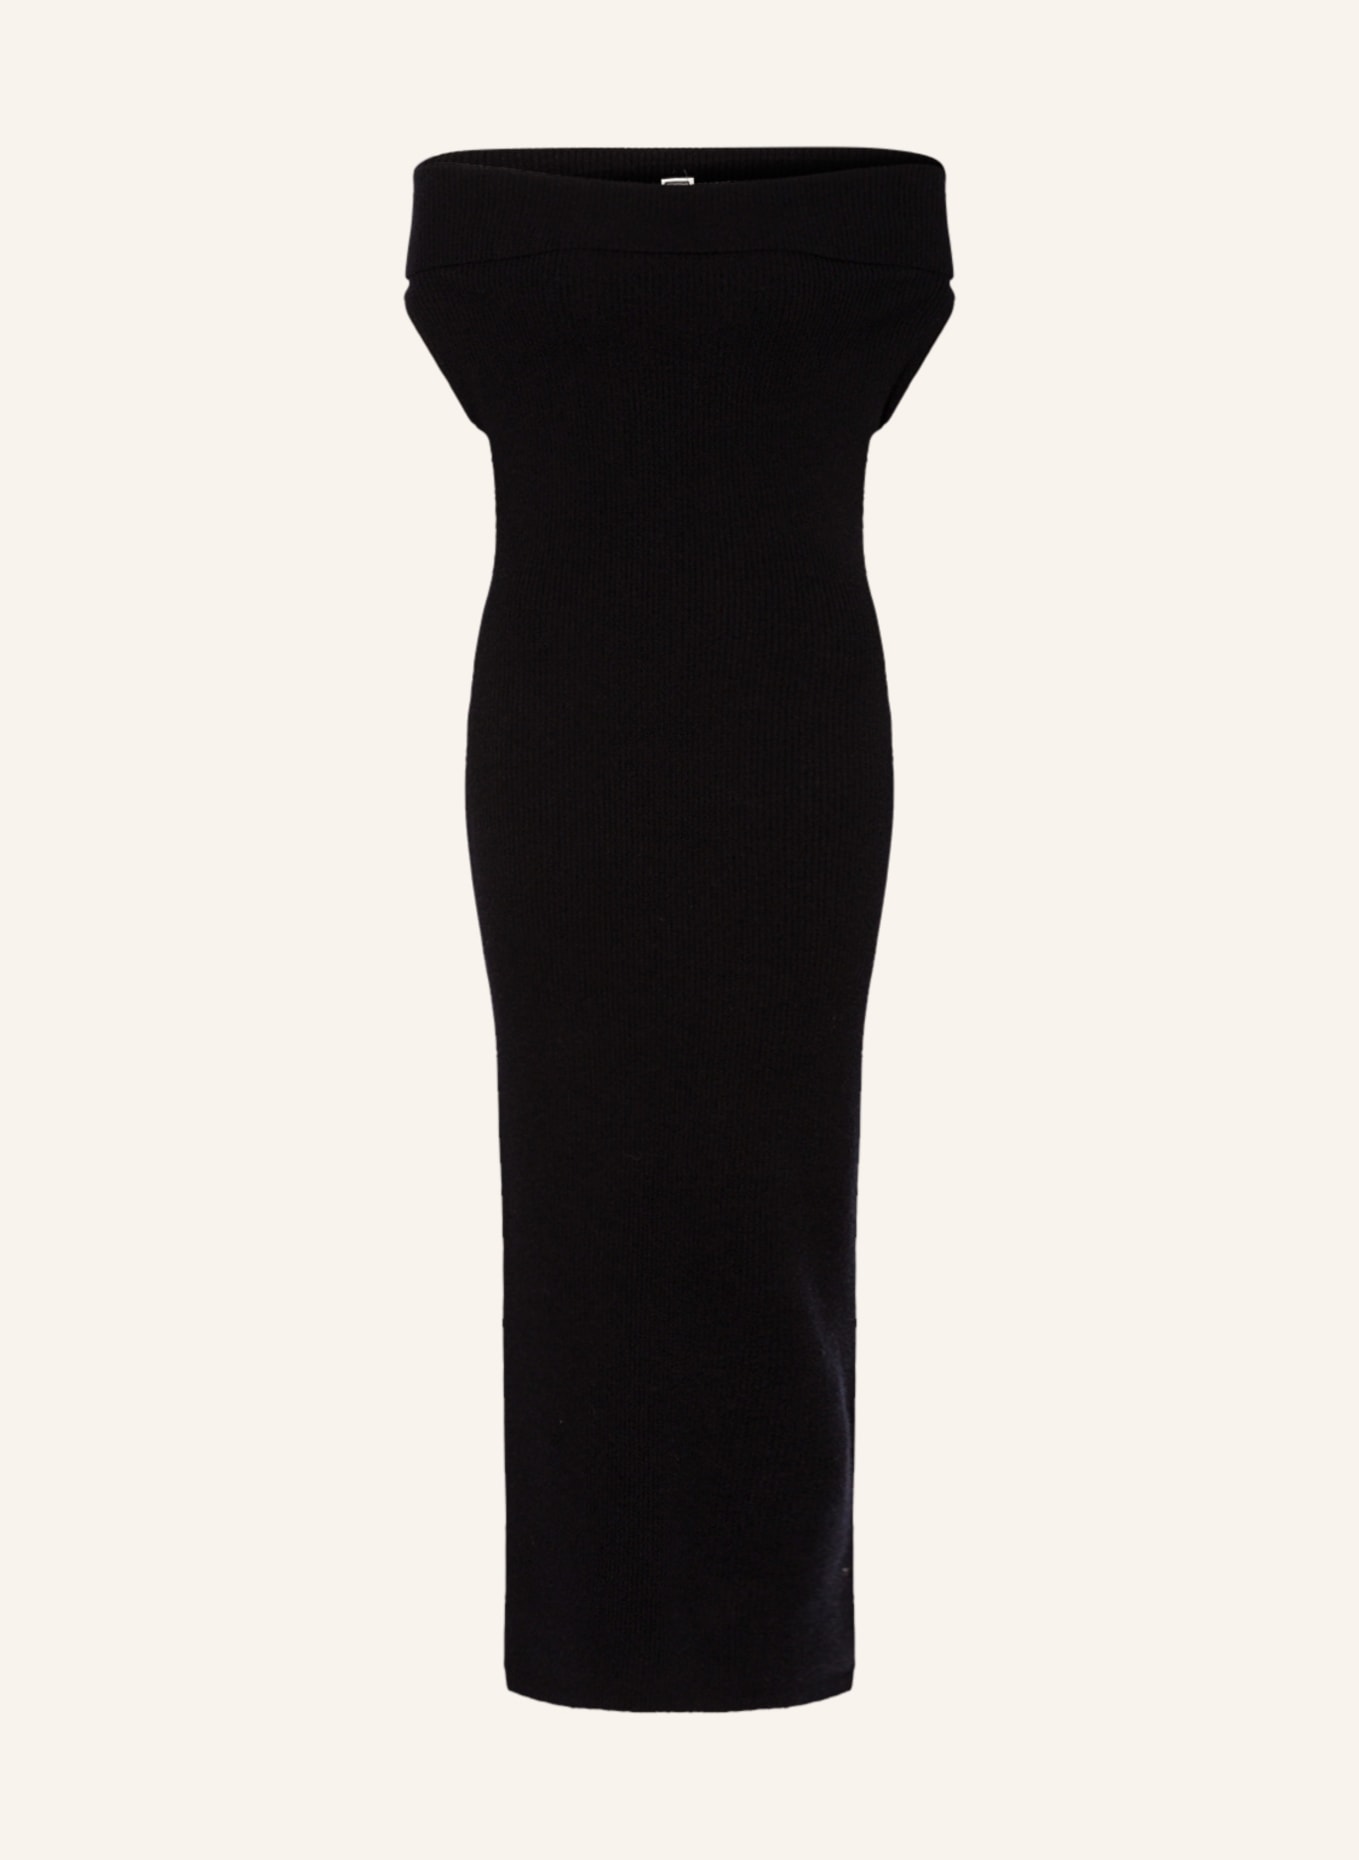 TOTEME Off-shoulder knit dress, Color: BLACK (Image 1)